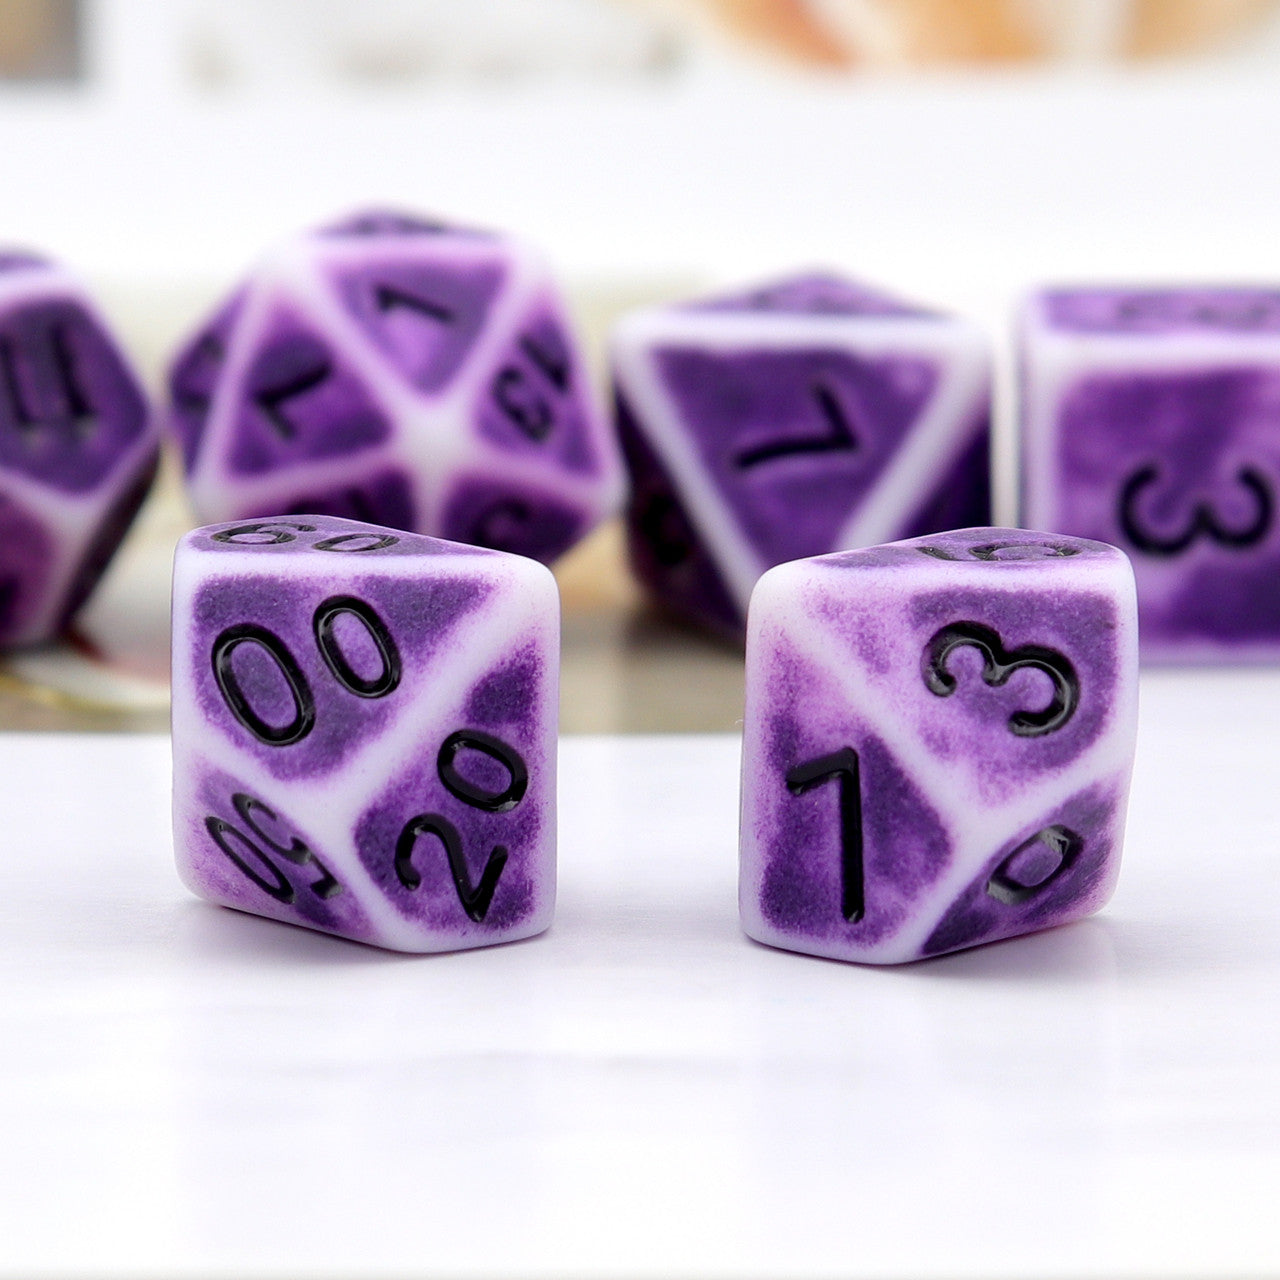 antique dice, ancient dice, purple dice, rpg dice, bone dice, polyhedral dice, dice set, dnd dice